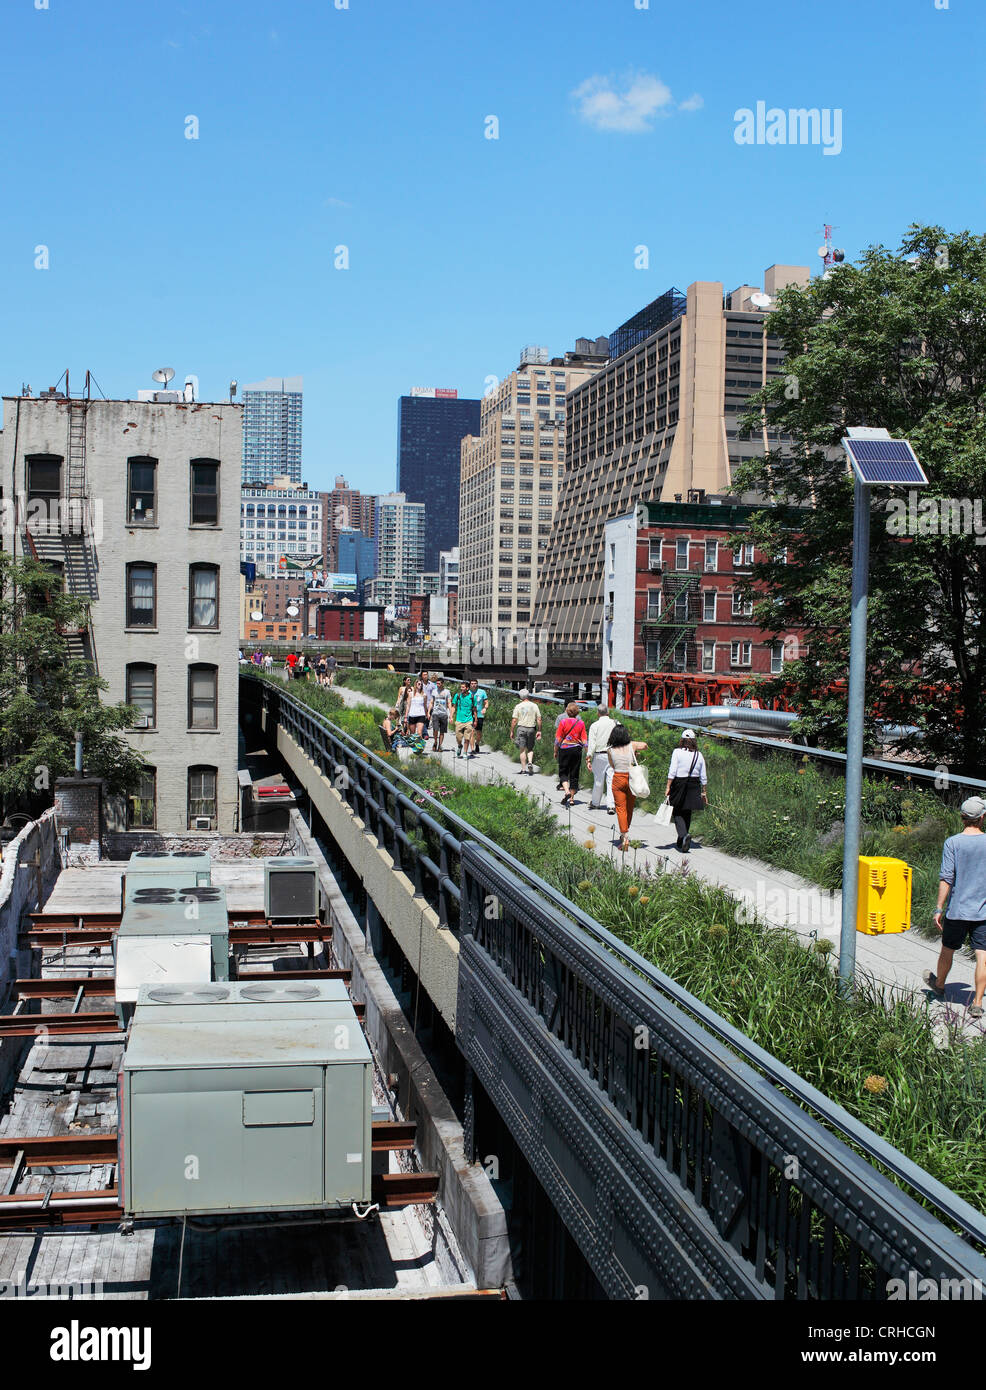 La ligne haute est un parc de la ville de New York construit sur une section de l'ancien des New York Central Railroad. Banque D'Images